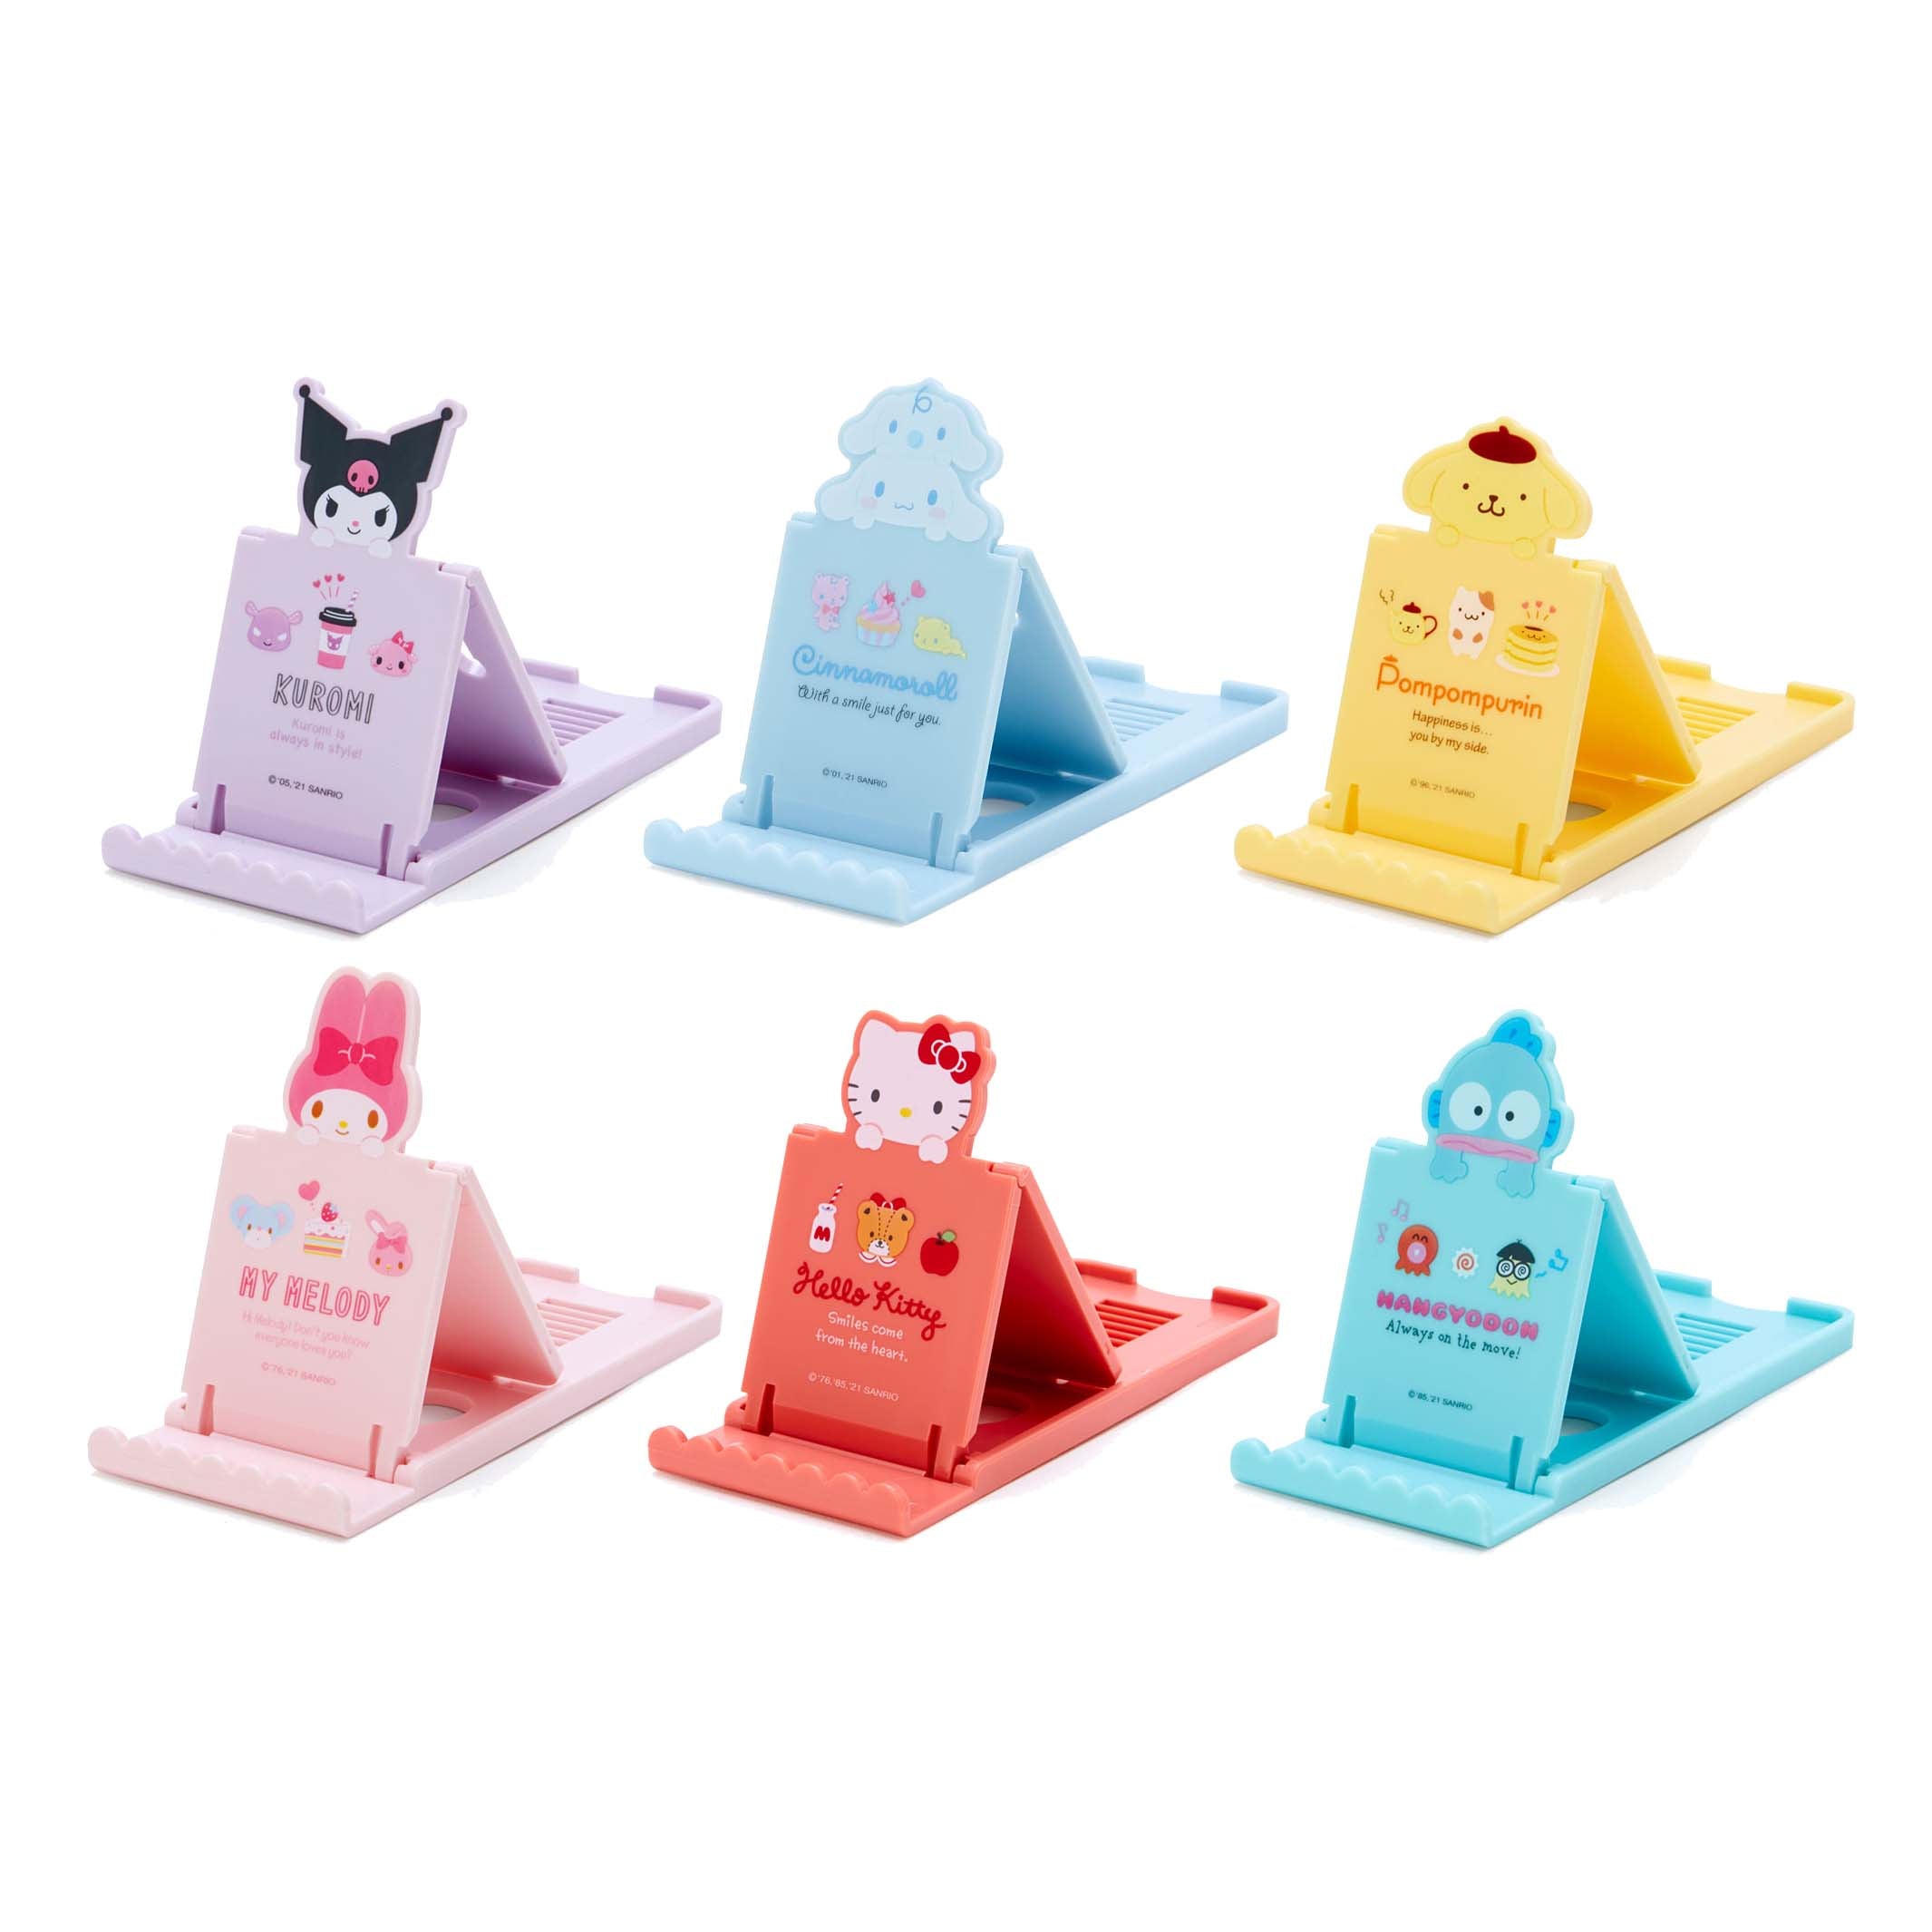 Sanrio Hello Kitty Cinnamoroll smartphone accessories pocopoco